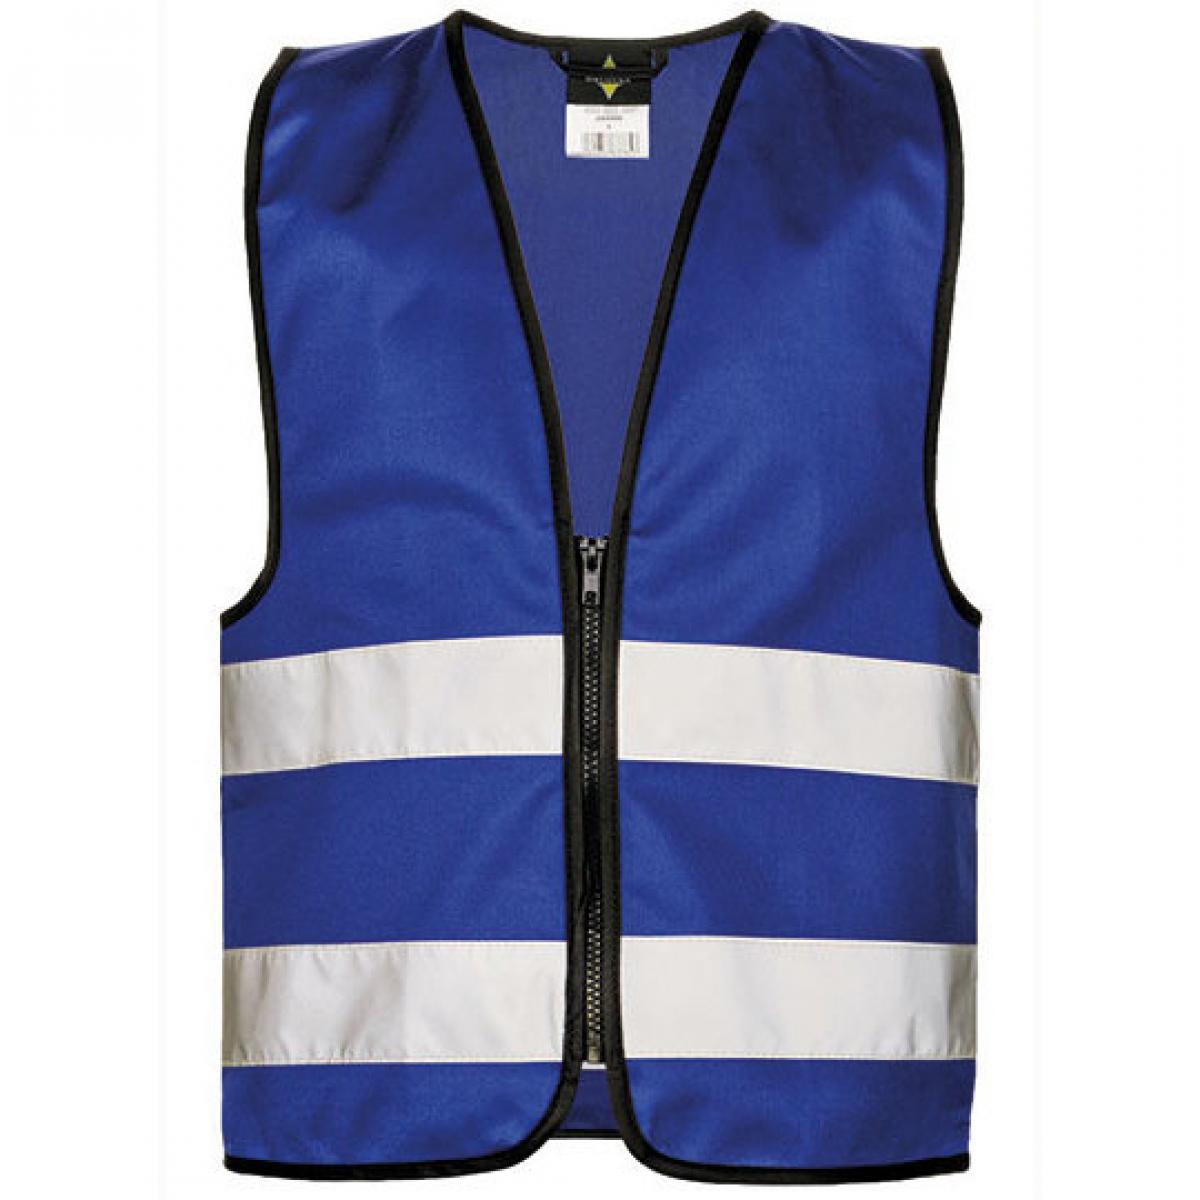 Hersteller: Korntex Herstellernummer: KWRX Artikelbezeichnung: Kinder Safety Vest for Kids with Zipper EN1150 Farbe: Royal Blue